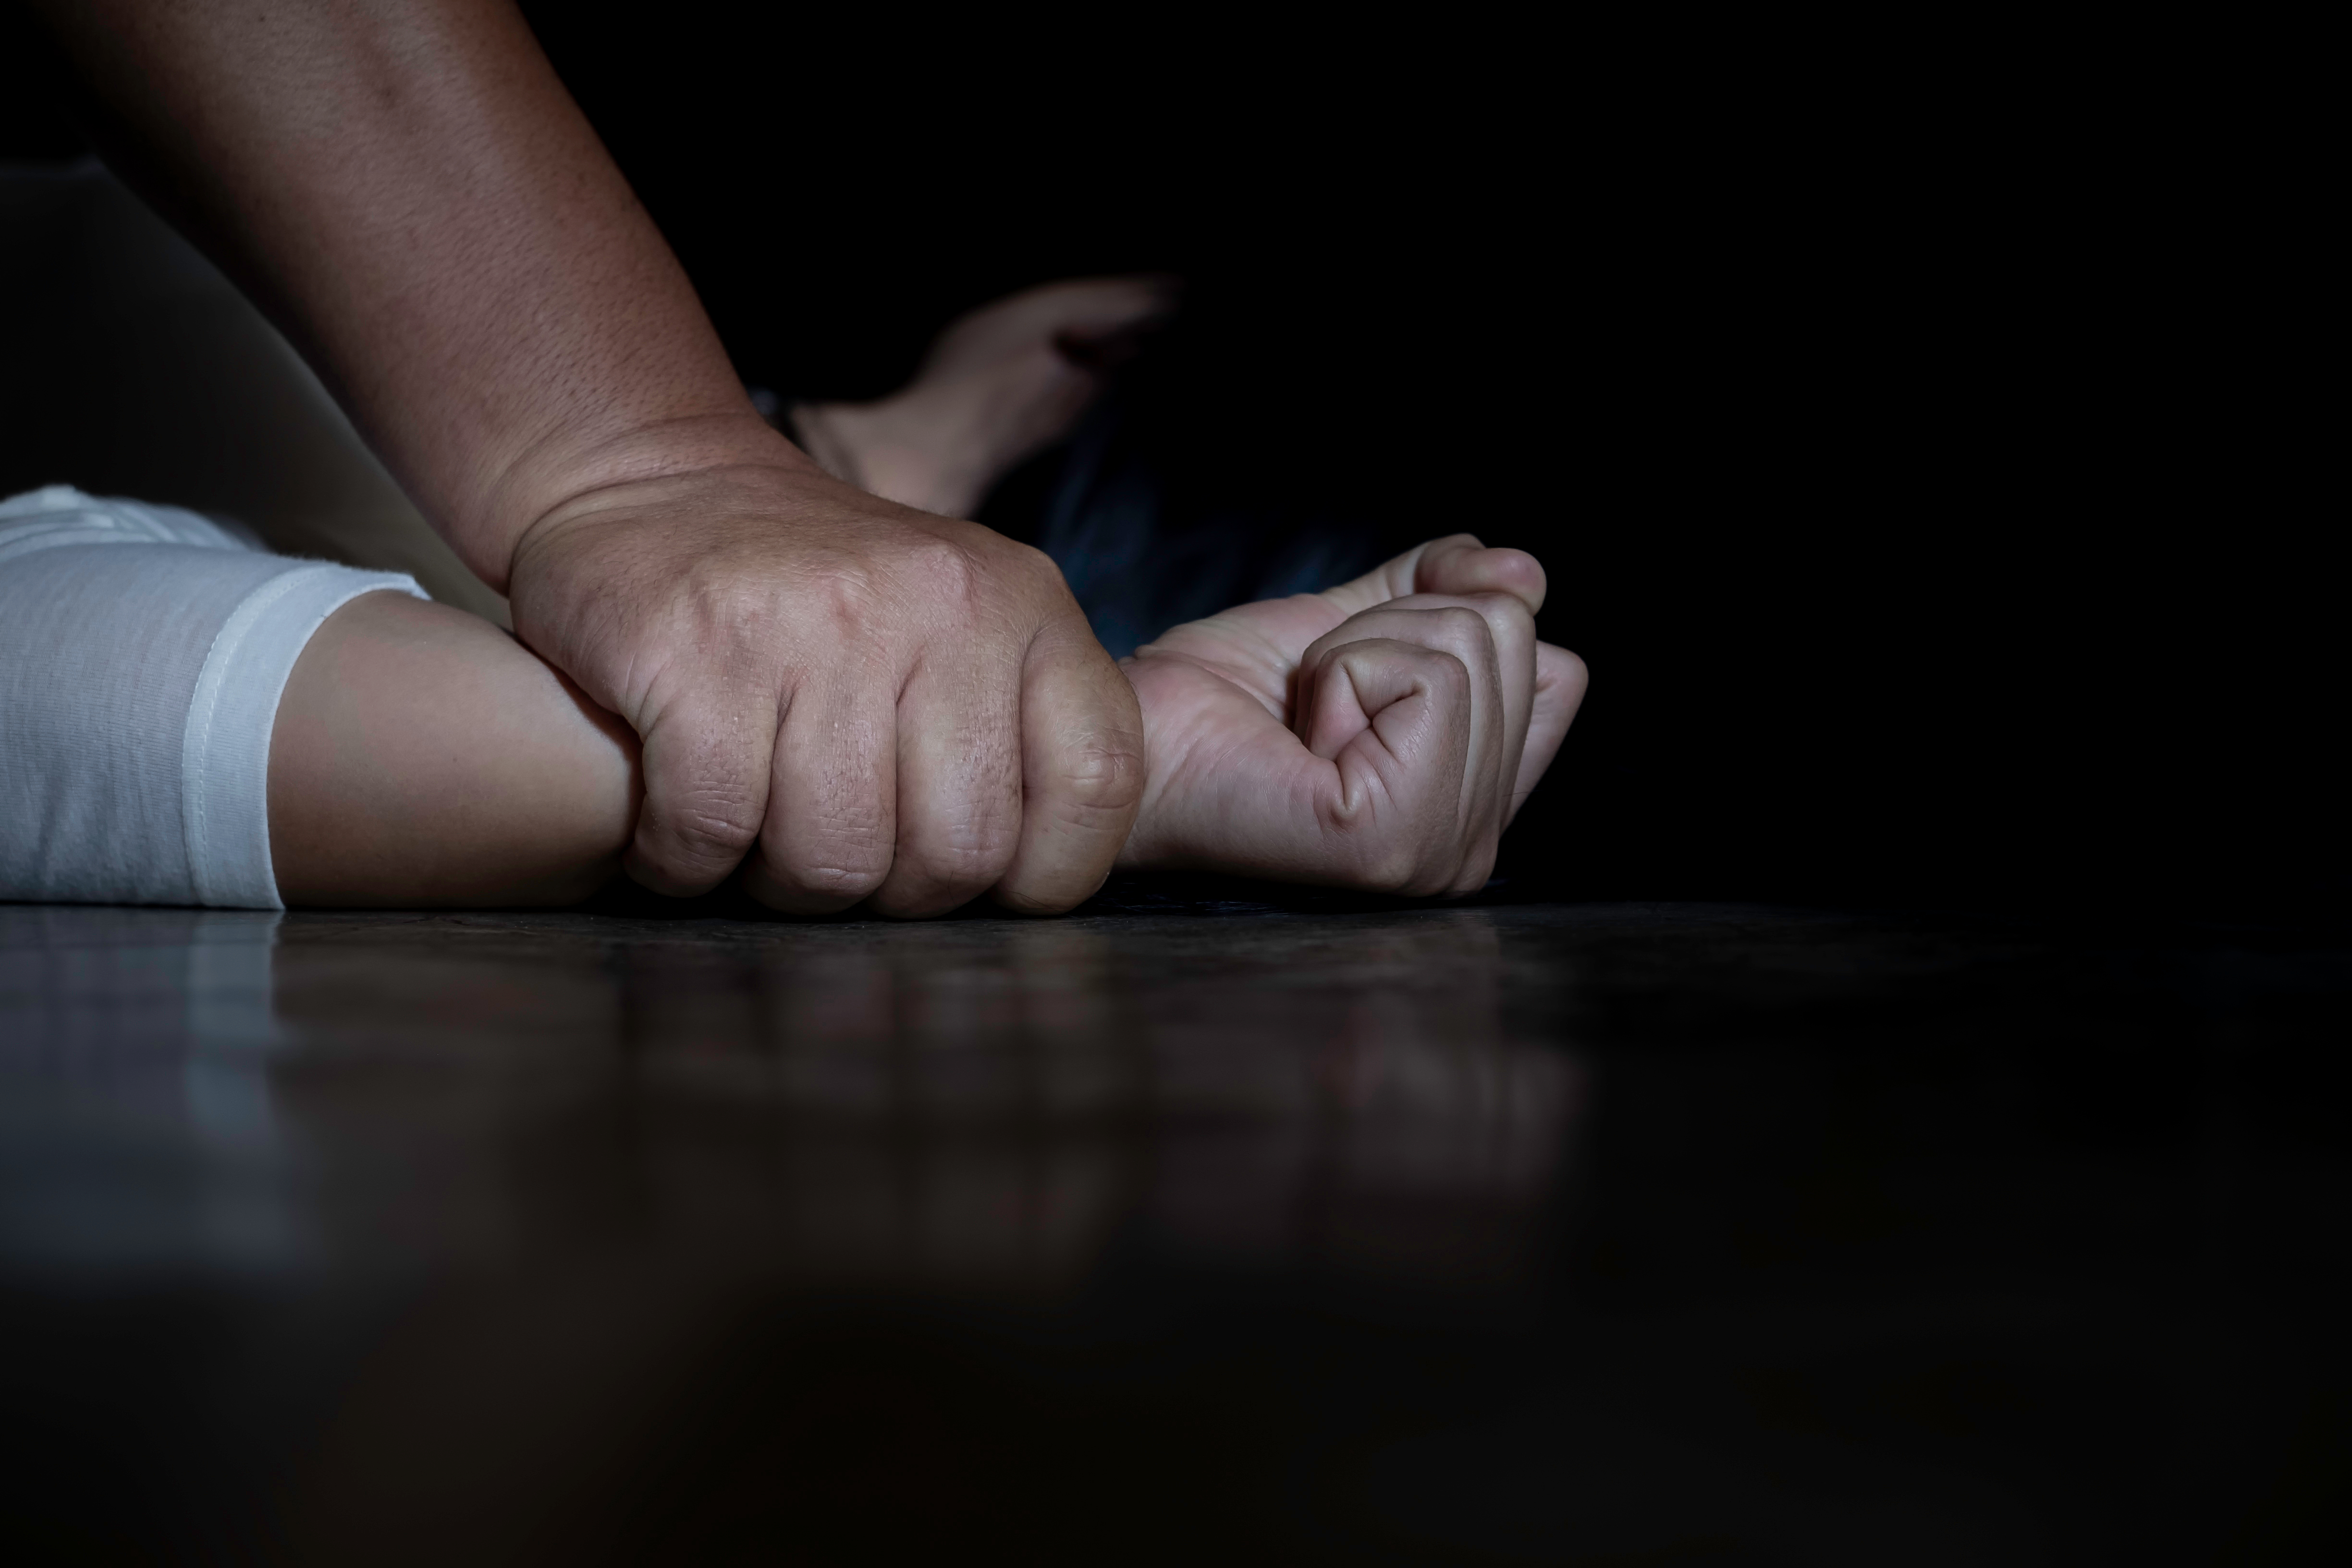 O fată de 18 ani din Maramureș a fost agresată sexual de unchiul ei timp de 10 ani. Mama și toți vecinii știau